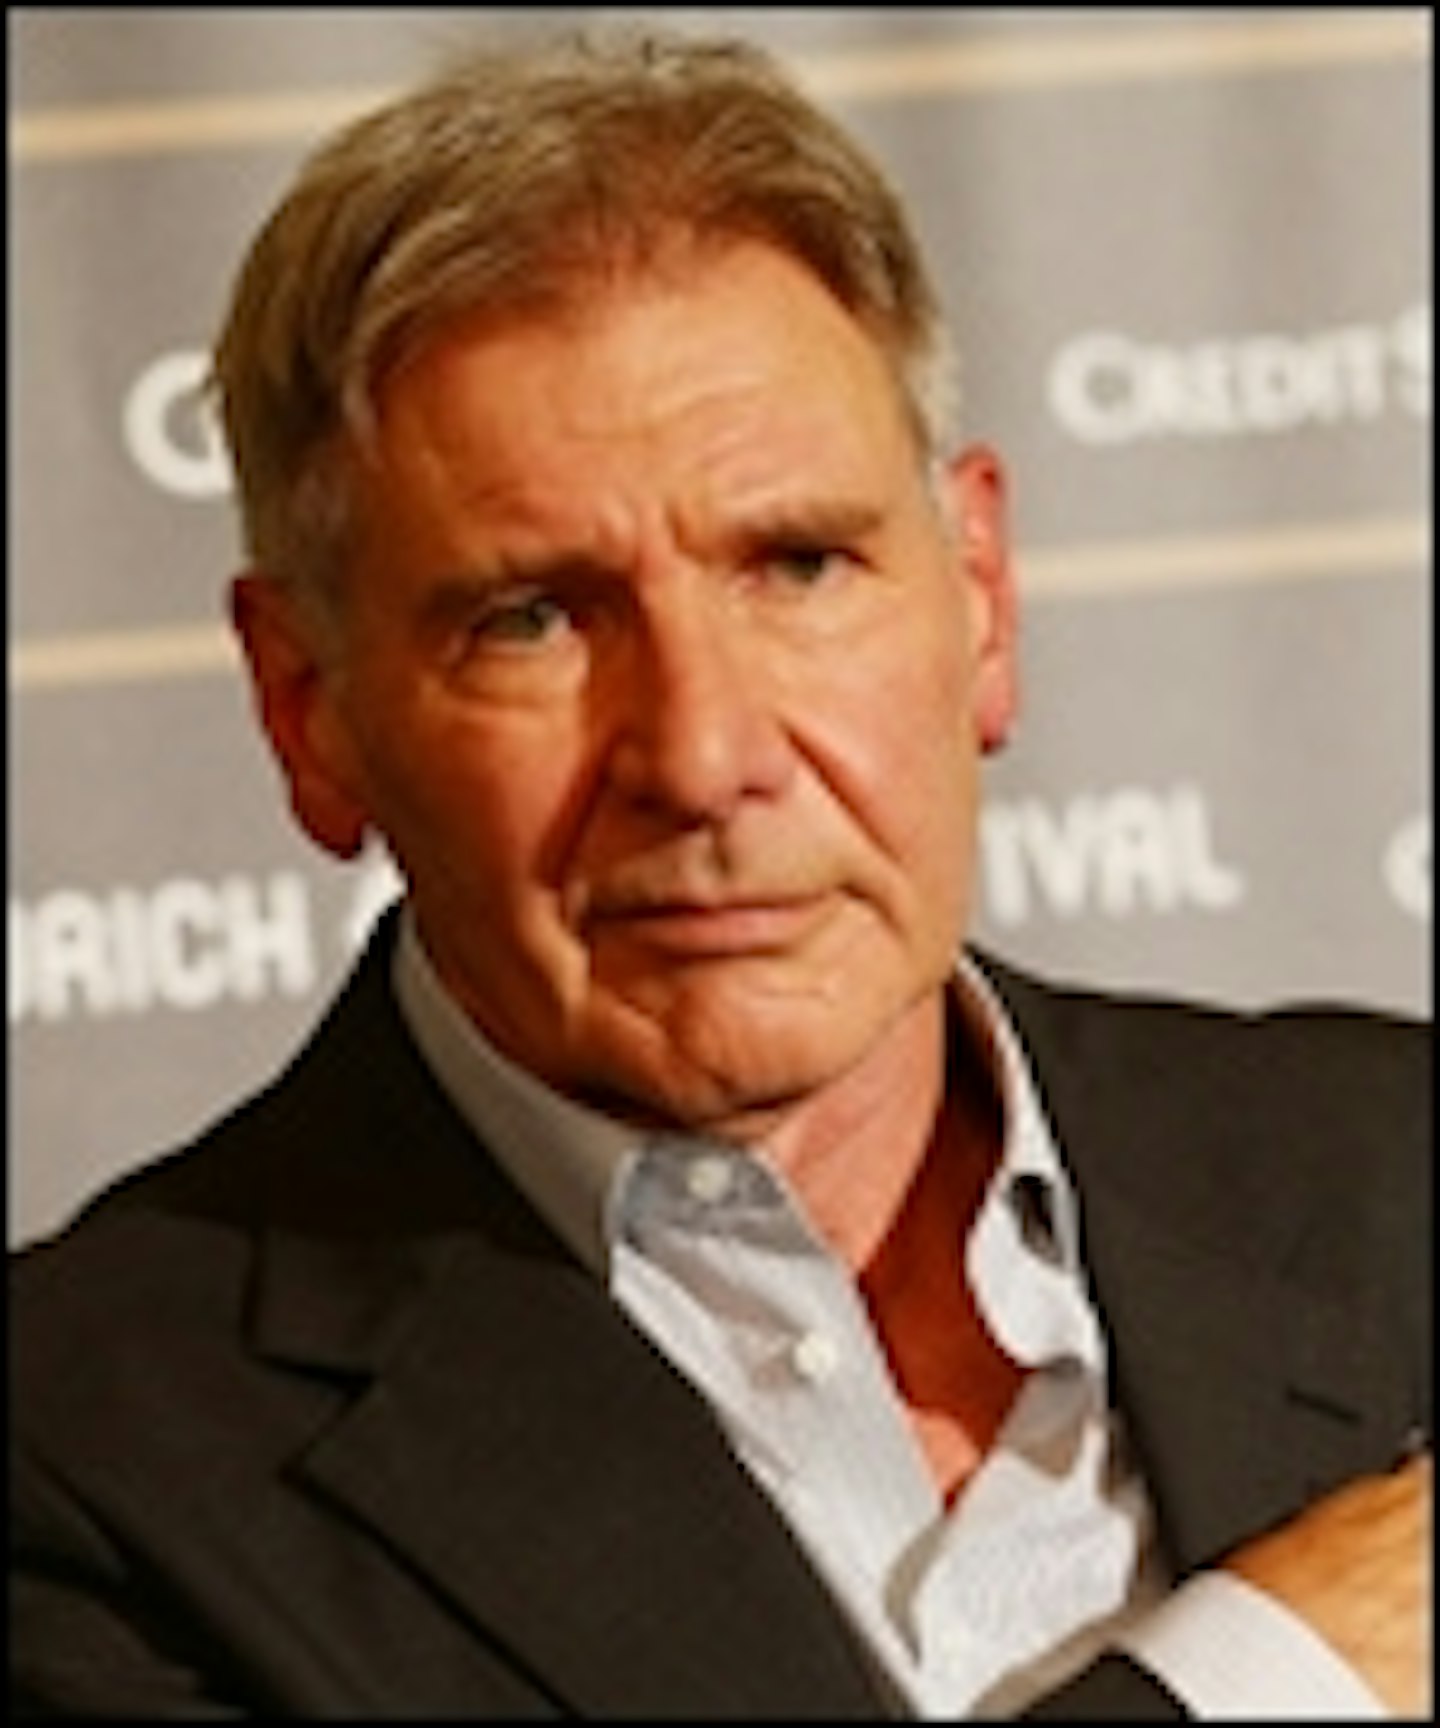 Harrison Ford Confirmed For Blade Runner 2